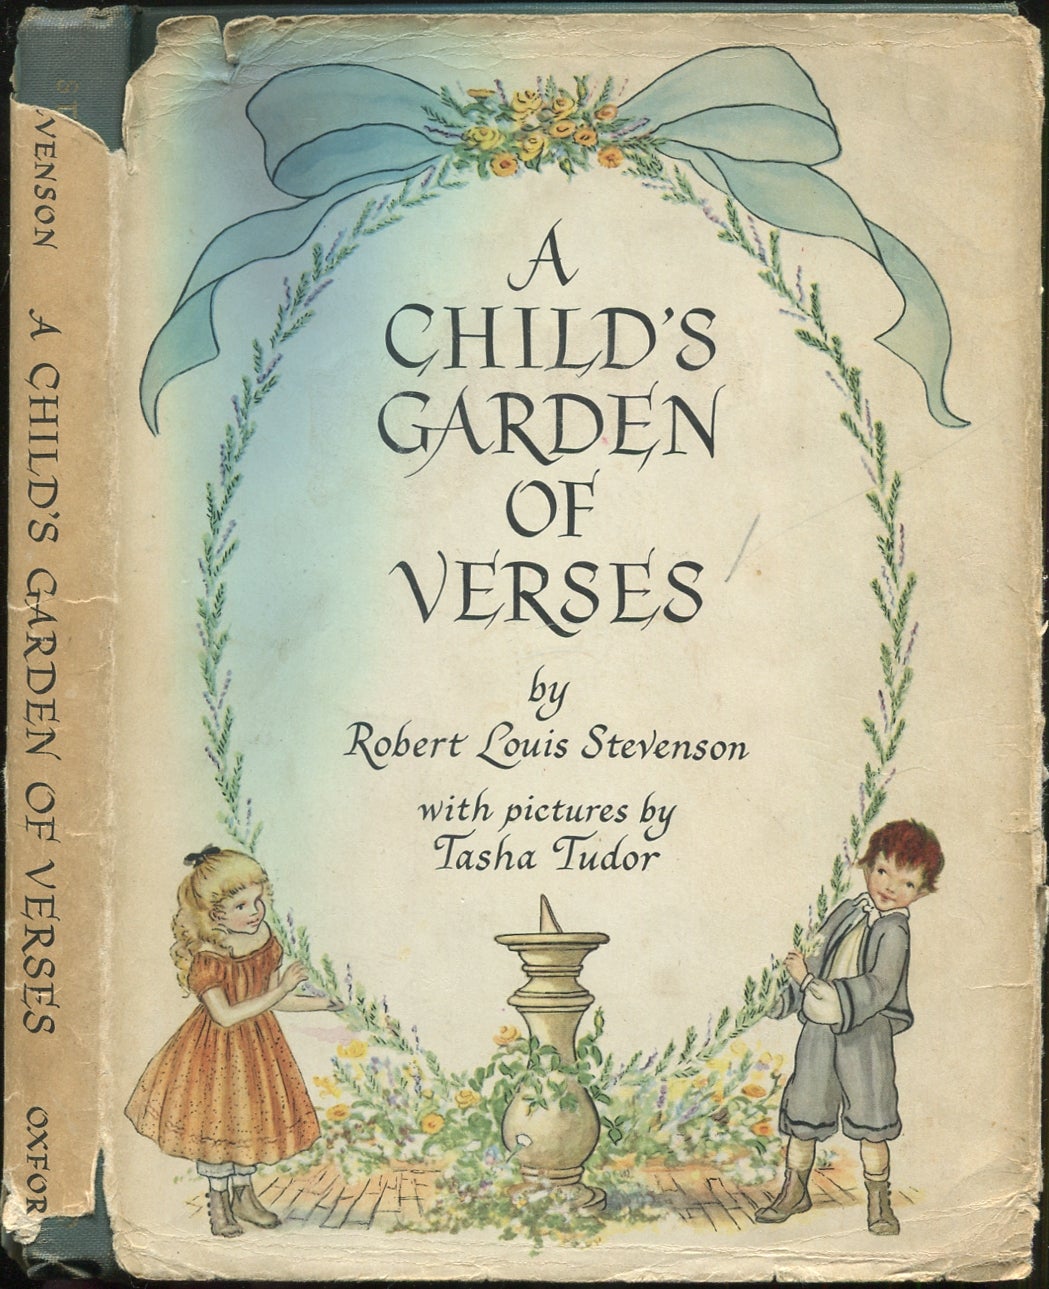 A CHILD'S GARDEN OF VERSES ROBERT LOUIS STEVENSON